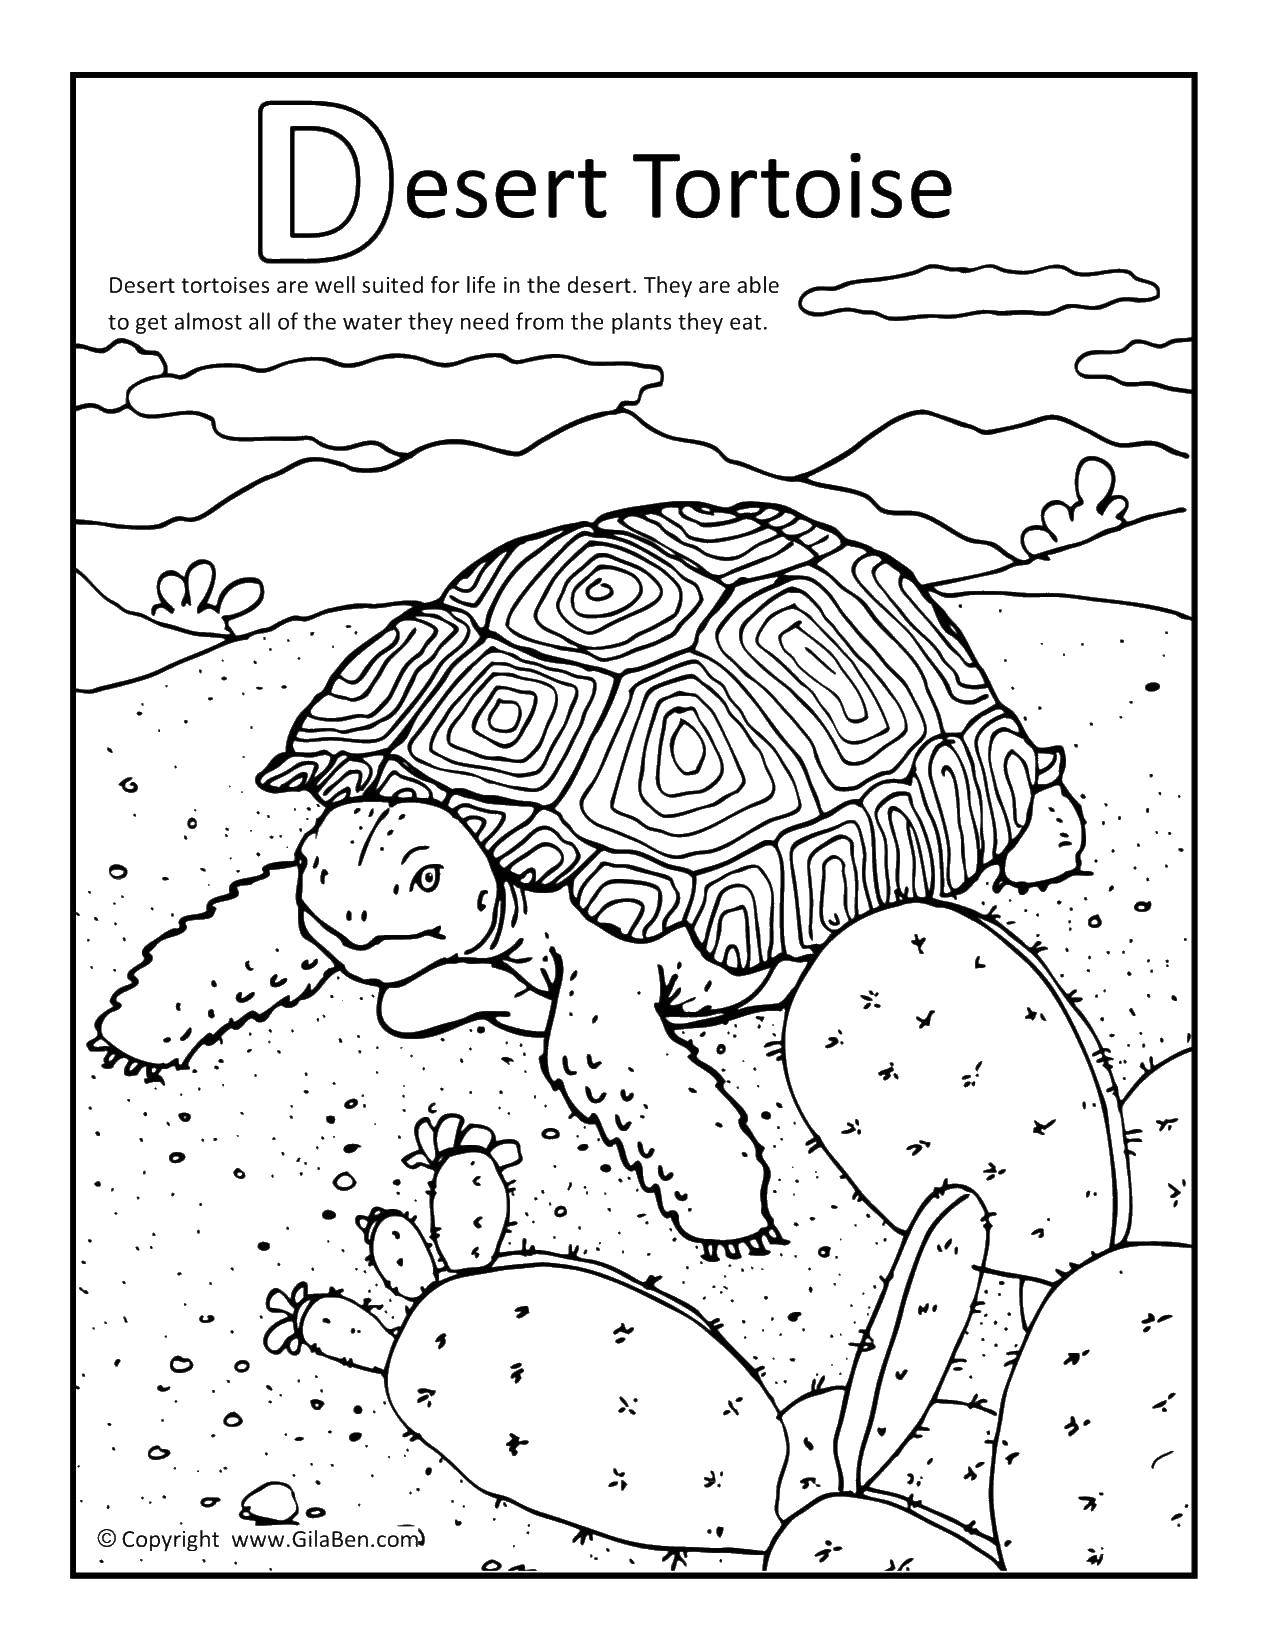 Coloring Desert tortoise. Category Desert. Tags:  turtle, desert, cactus.